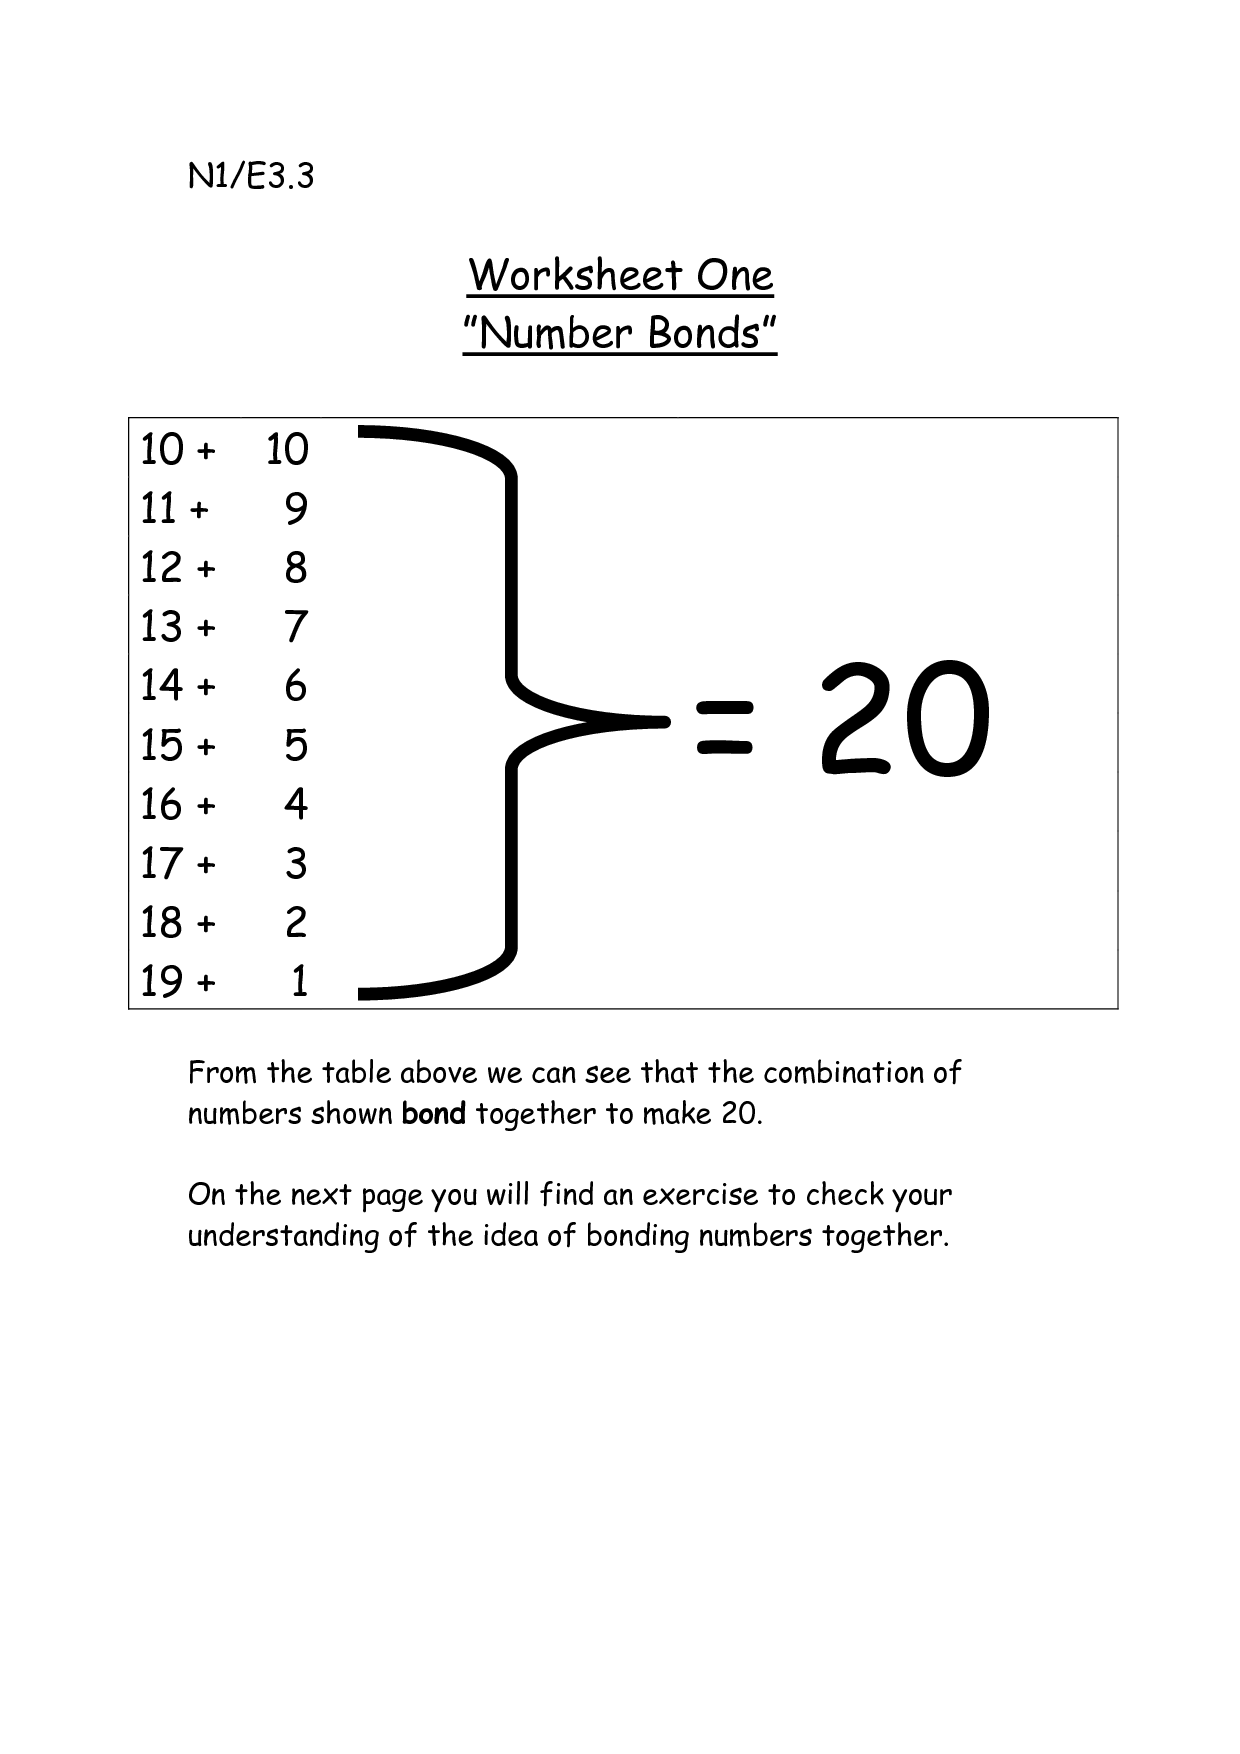 Number Bond Worksheet Printables Image